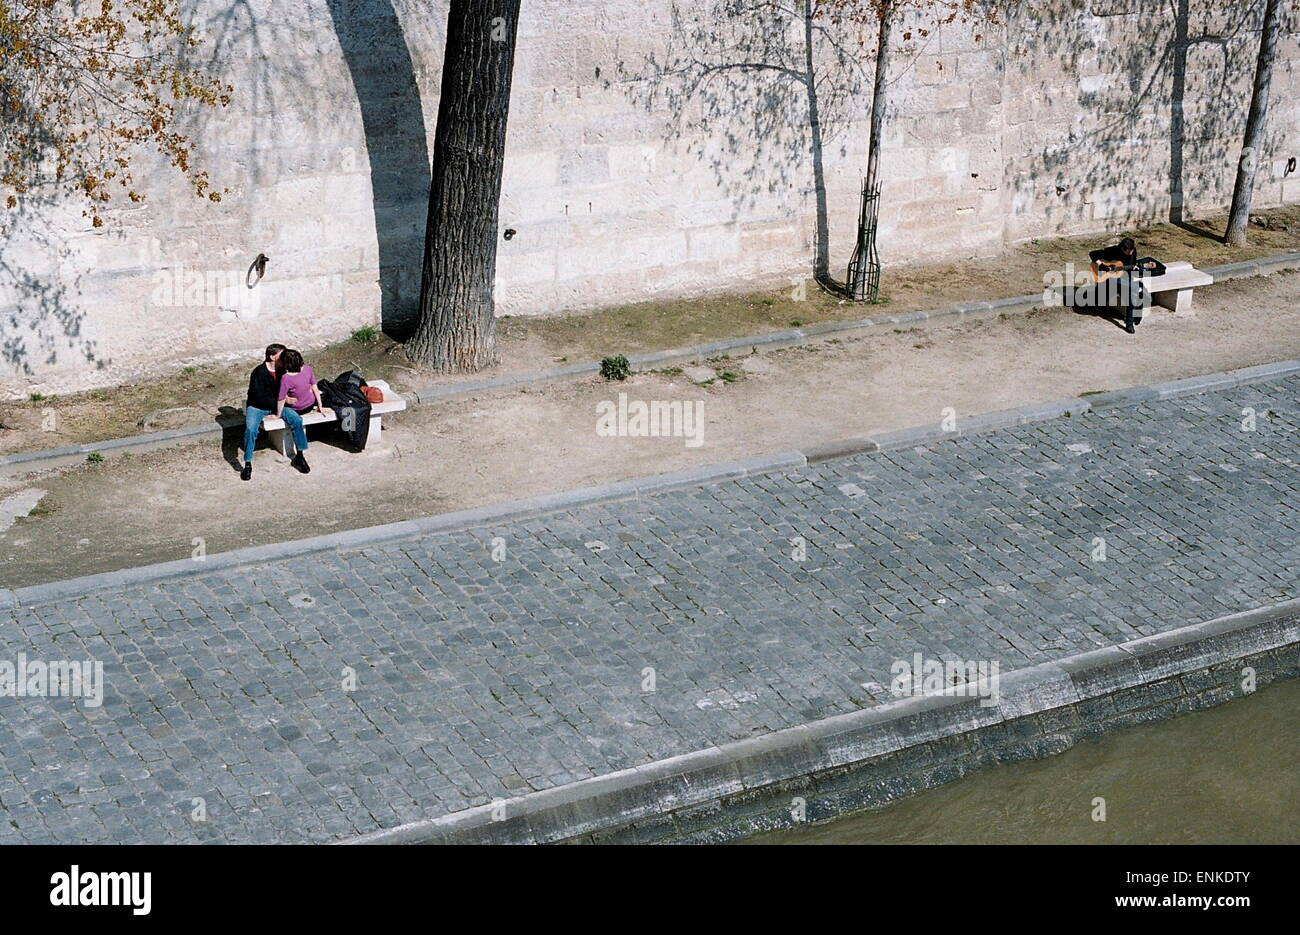 AJAXNETPHOTO. Parigi, Francia. - Sulle rive della Senna - una coppia e un chitarrista prendere il loro piacere sulle rive del fiume nel cuore della citta'. Foto:JONATHAN EASTLAND/AJAX REF:82905 04 Foto Stock